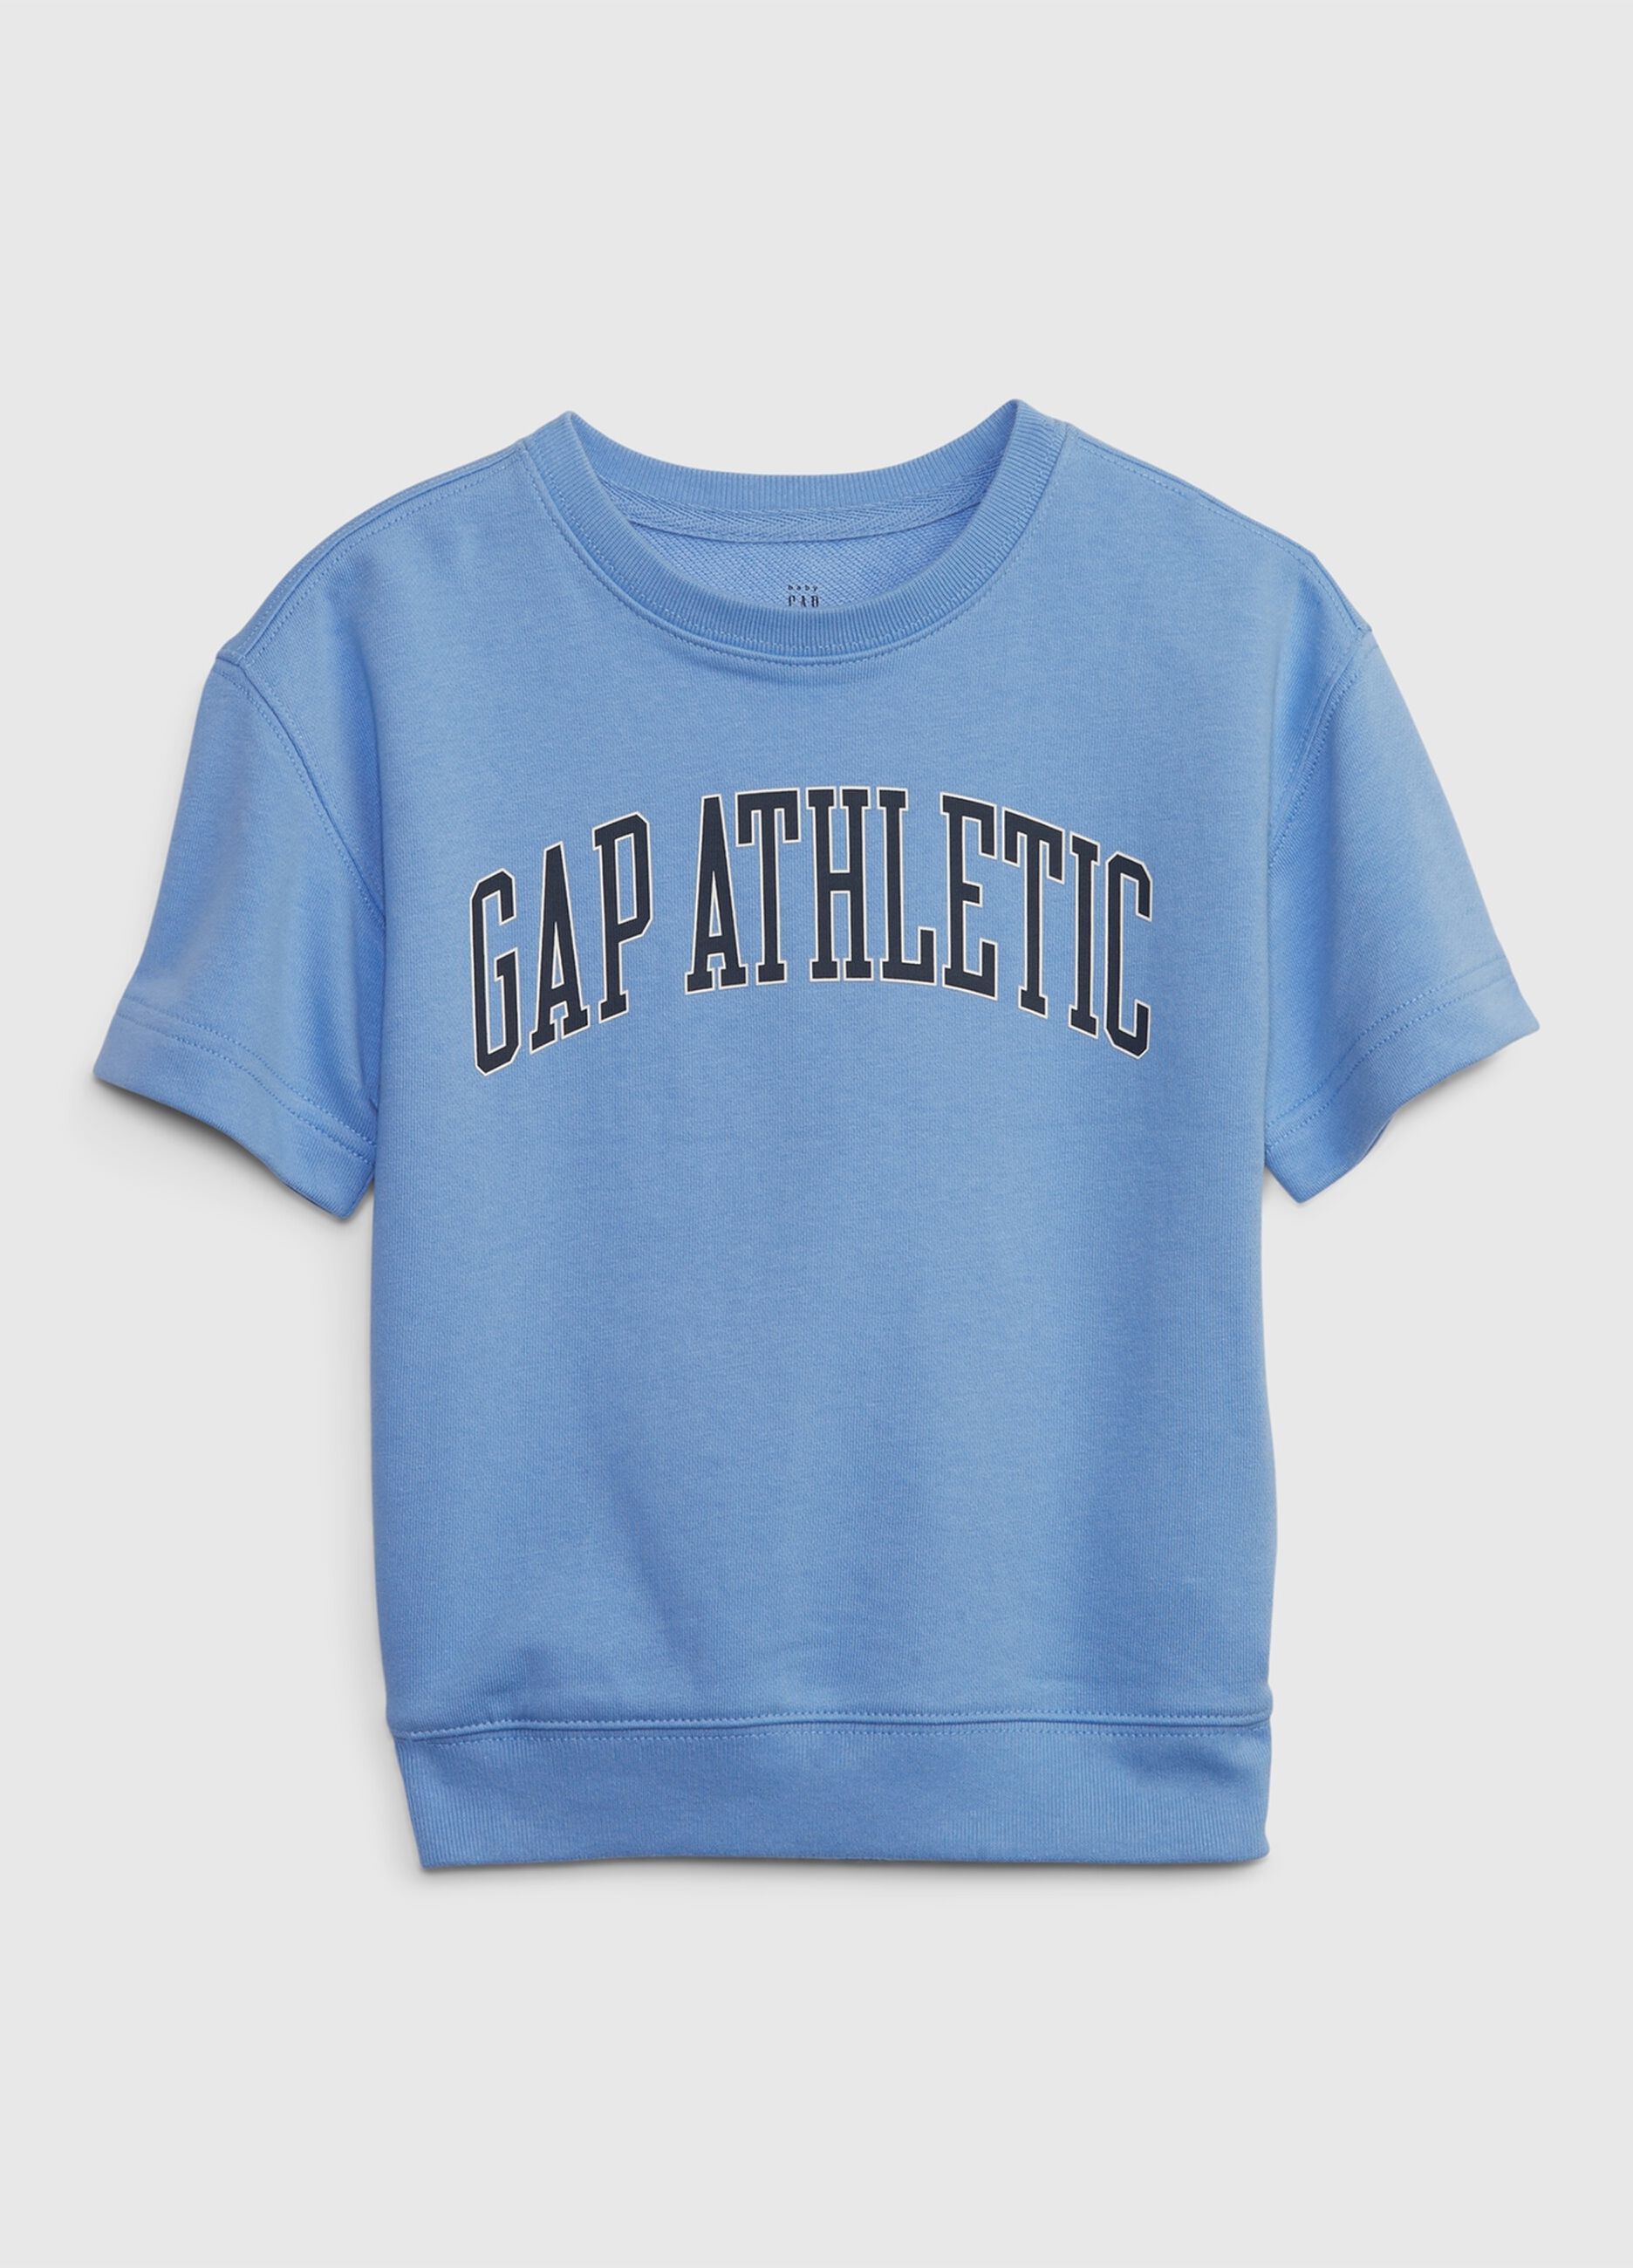 Short-sleeved sweatshirt with Athletic logo